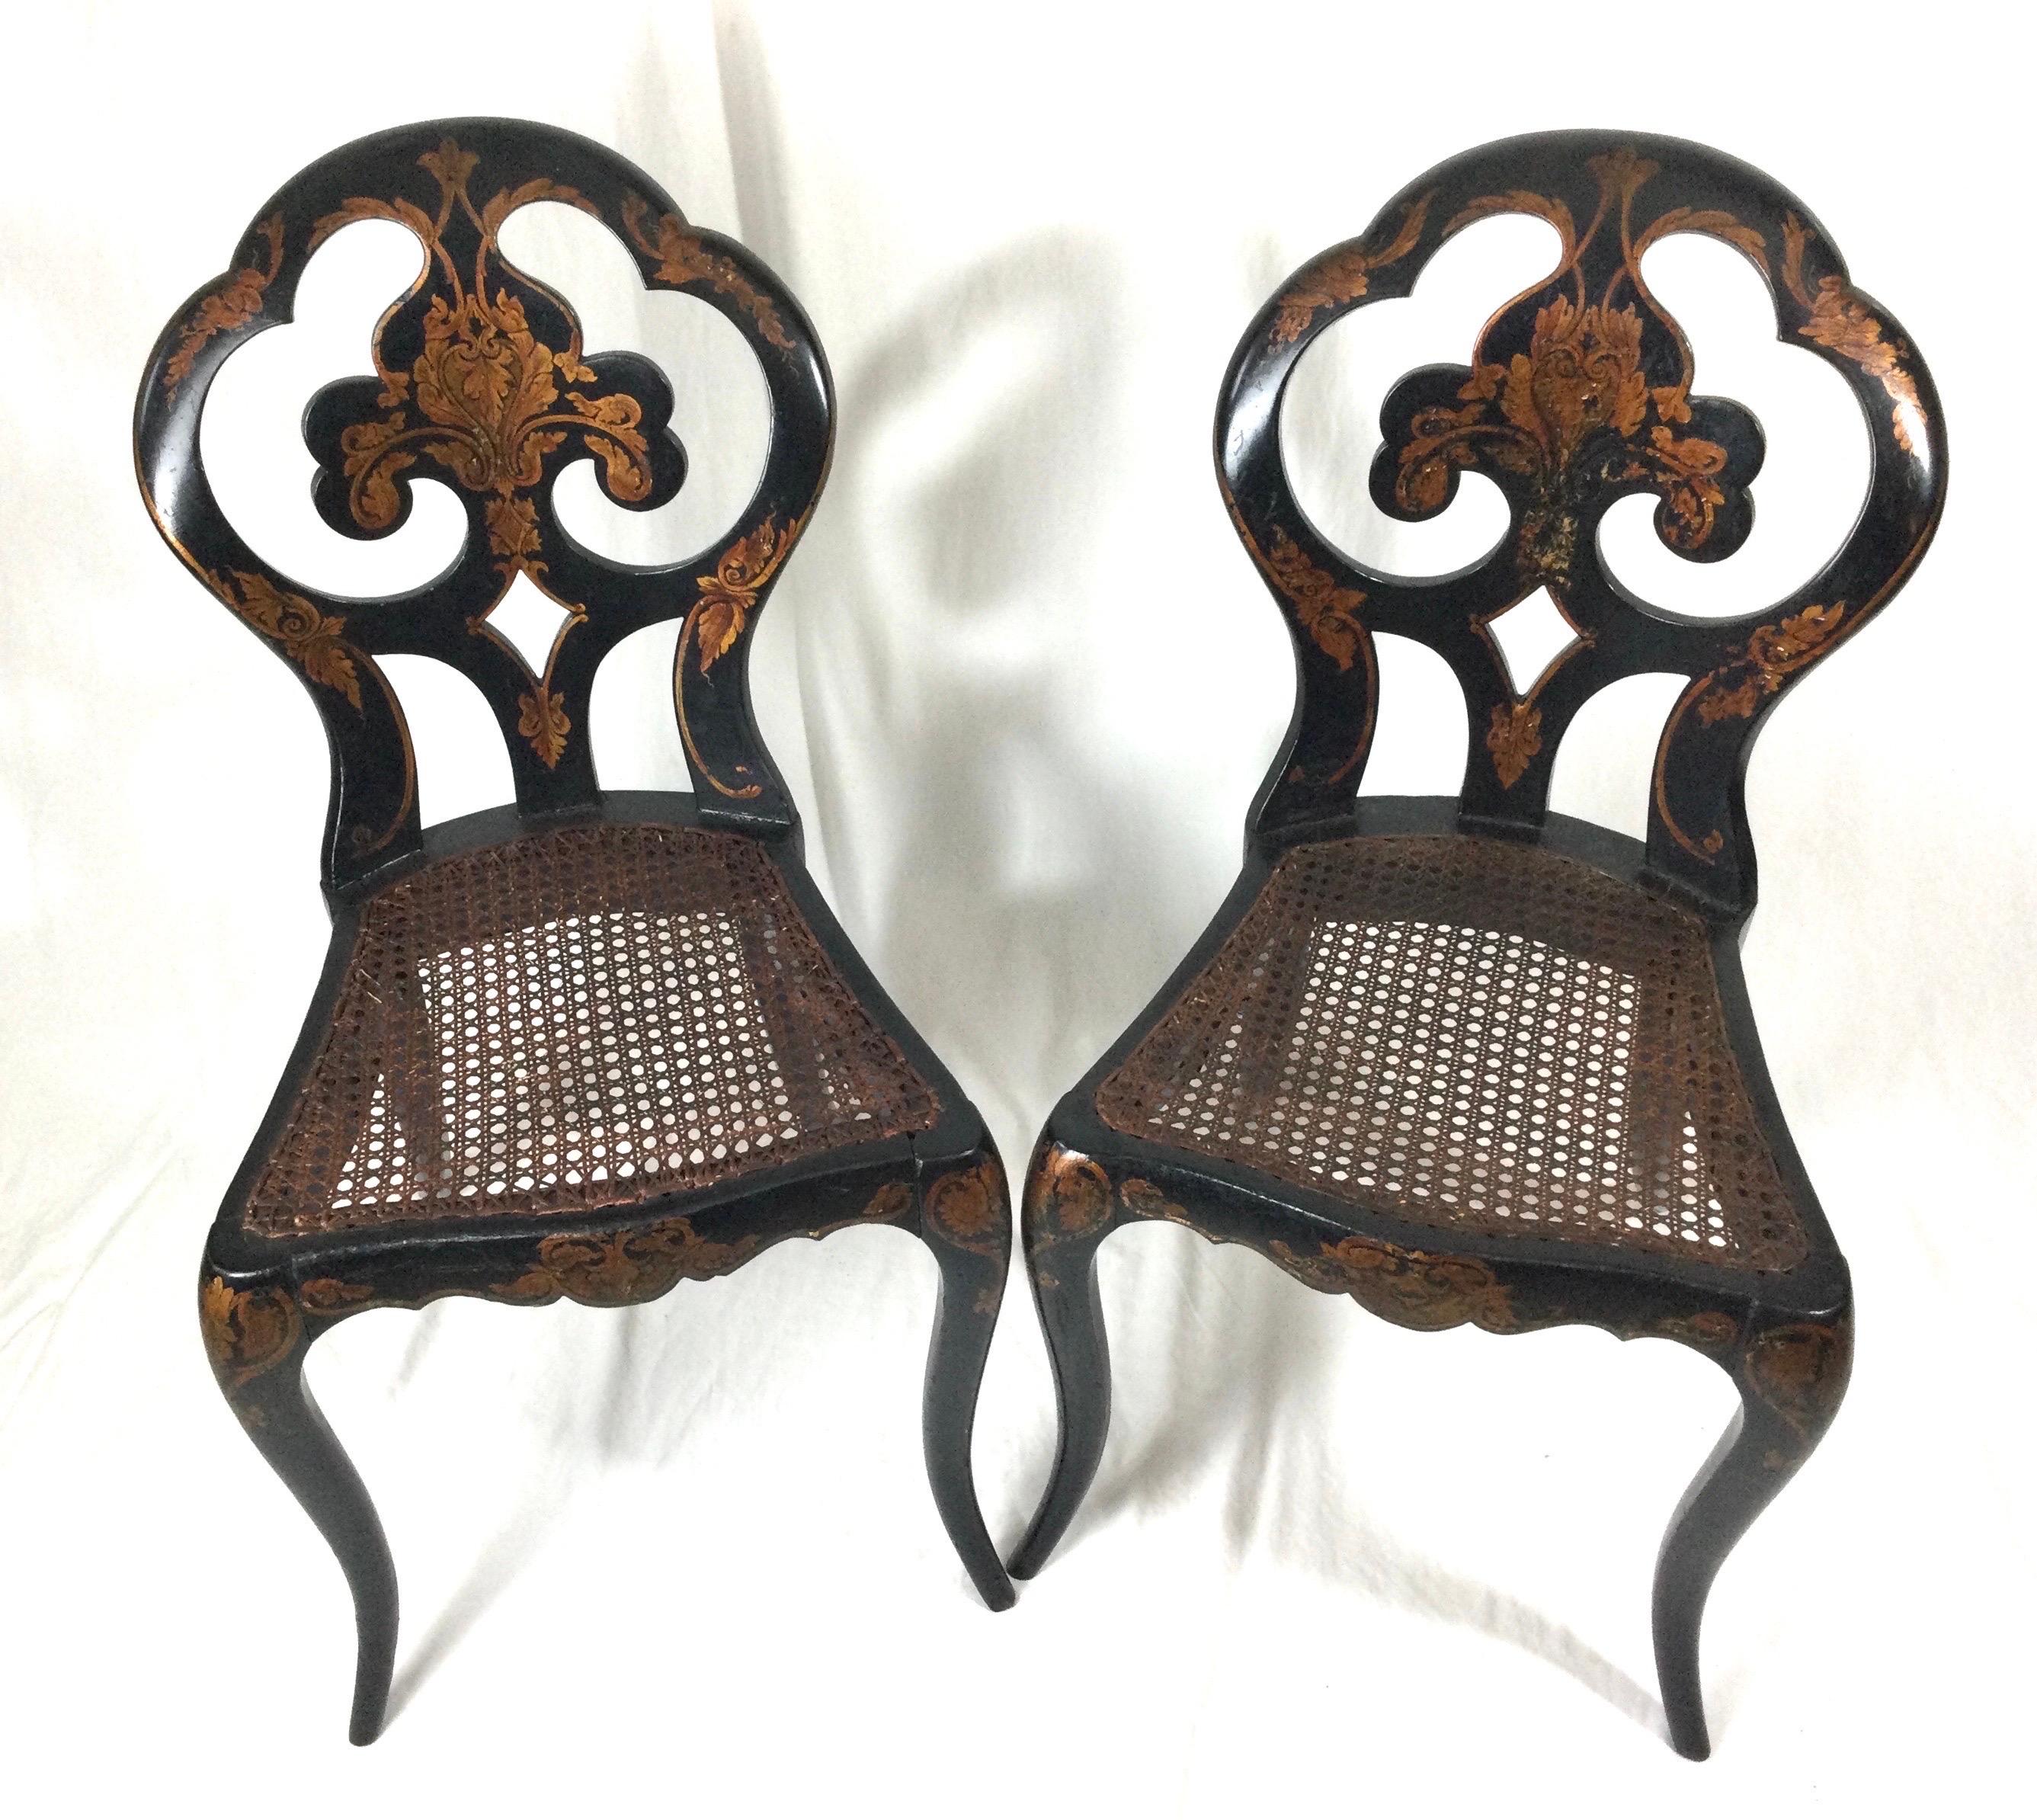 Charmante paire de petites chaises anglaises en bois laqué, peintes à la main, de style chinoiserie, avec sièges en rotin. Avec des dos en forme de bouclier et des pieds gracieusement incurvés avec des détails décorés à la main, vers